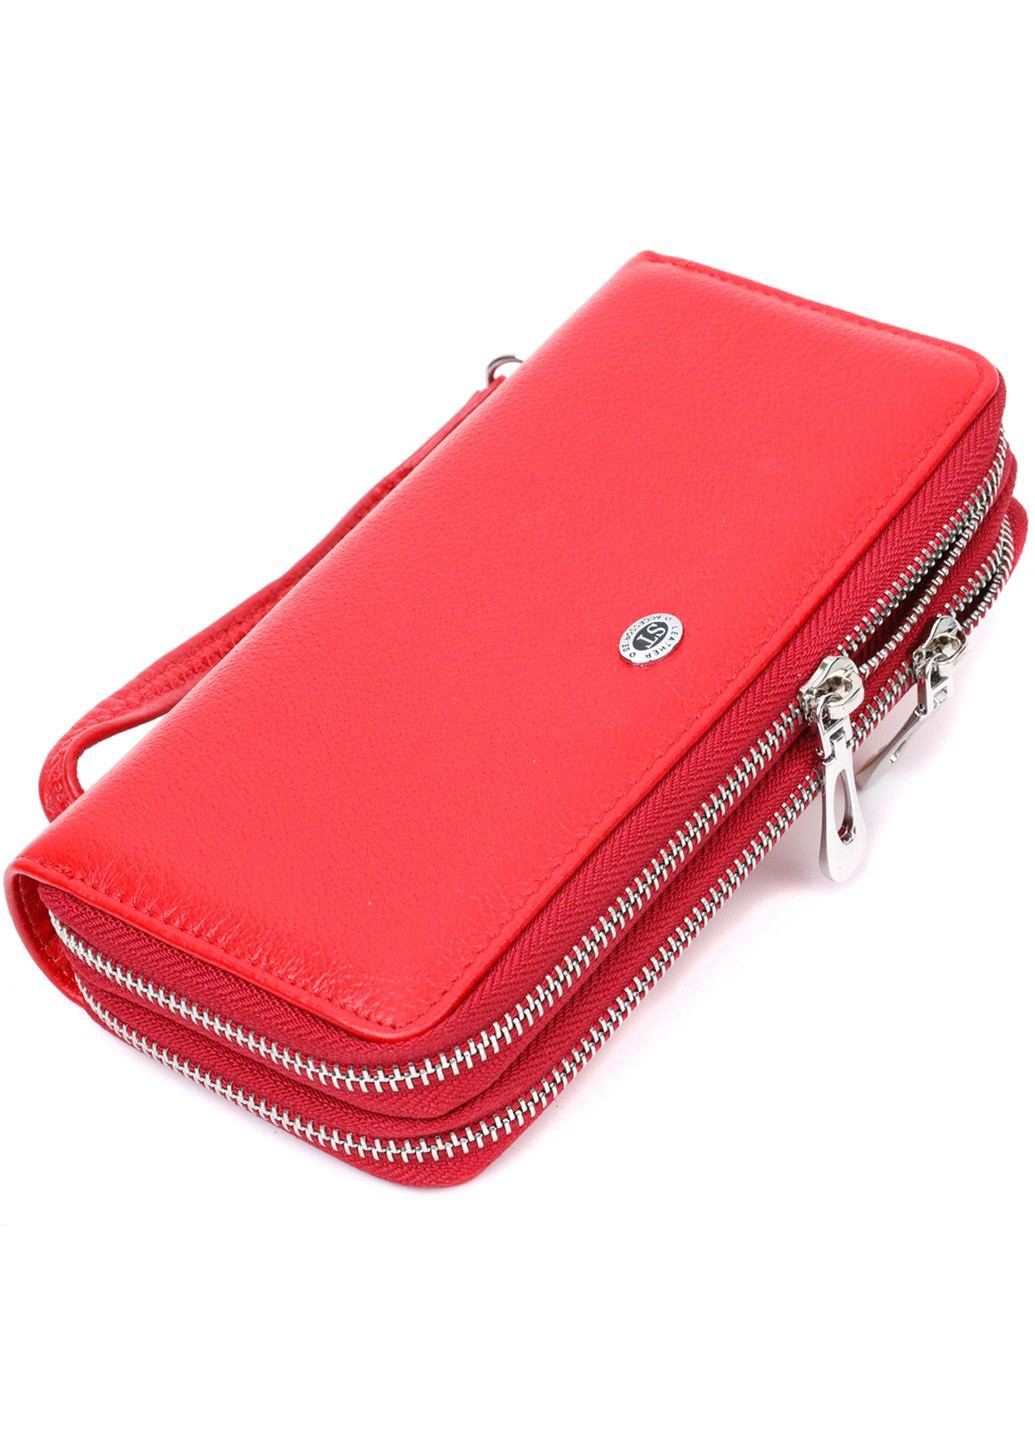 Яркий женский кошелек-клатч с двумя отделениями на молниях 19430 Красный st leather (276461858)